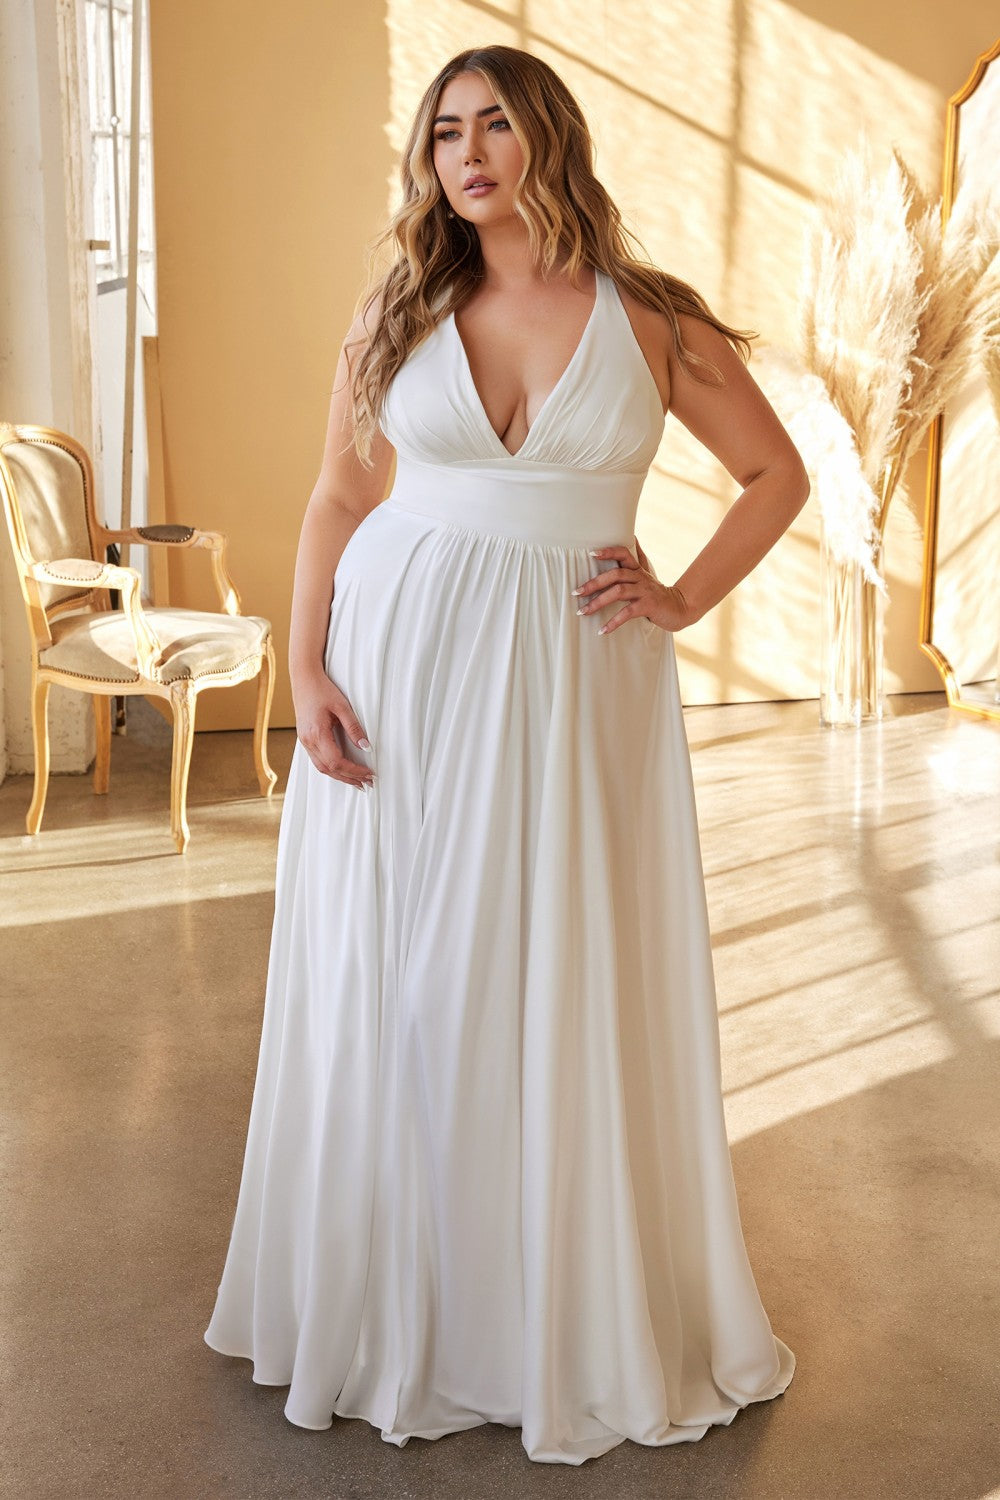 Plus Size Classic Soft a-line dress Curvy Fitted Bodice Long Wedding Ceremony Dress CD7469WW-Wedding Dress-smcfashion.com